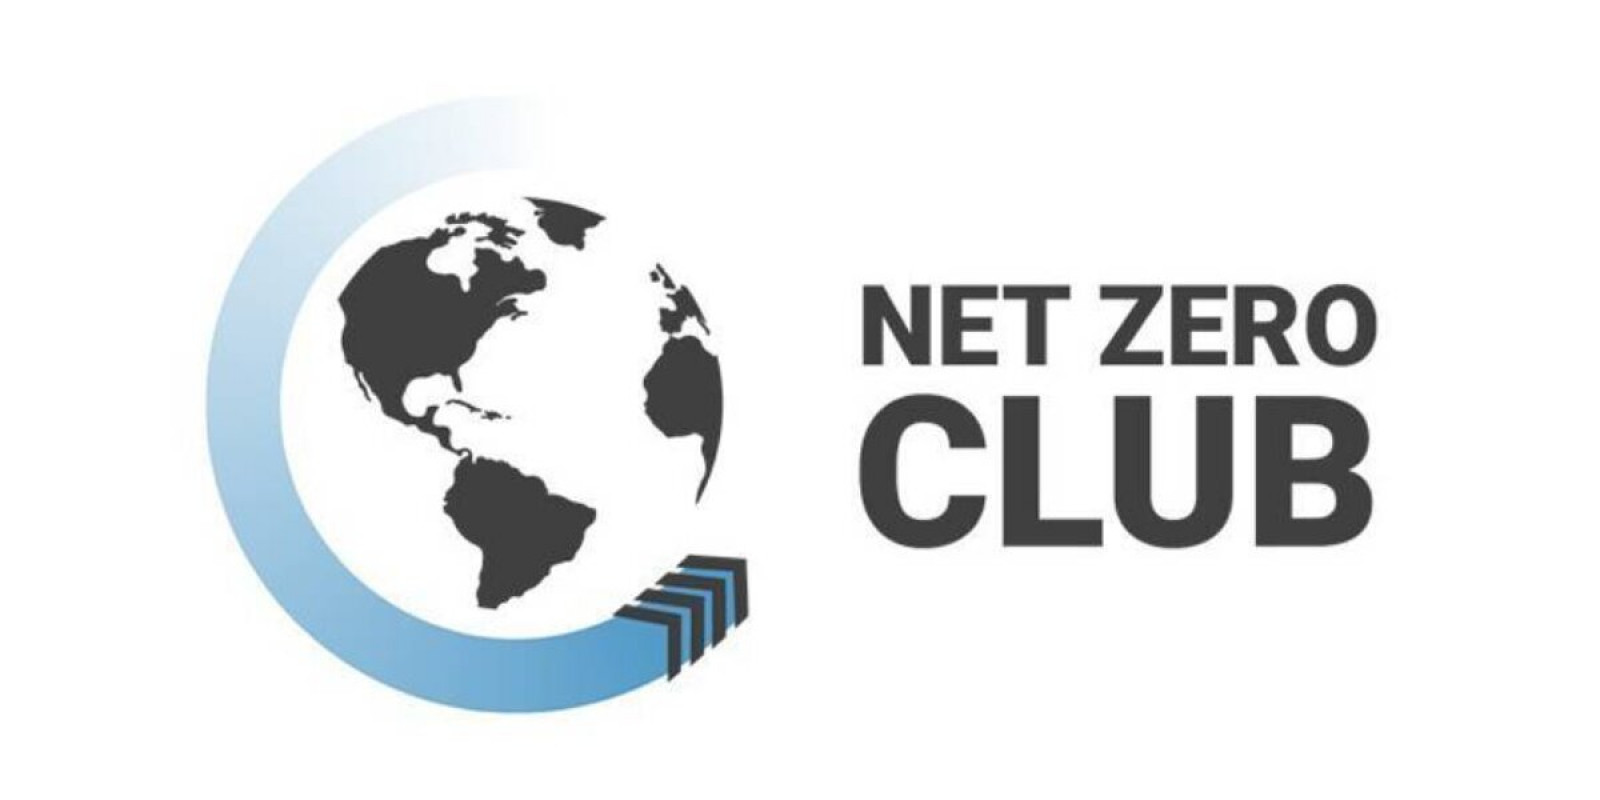 Net Zero Club